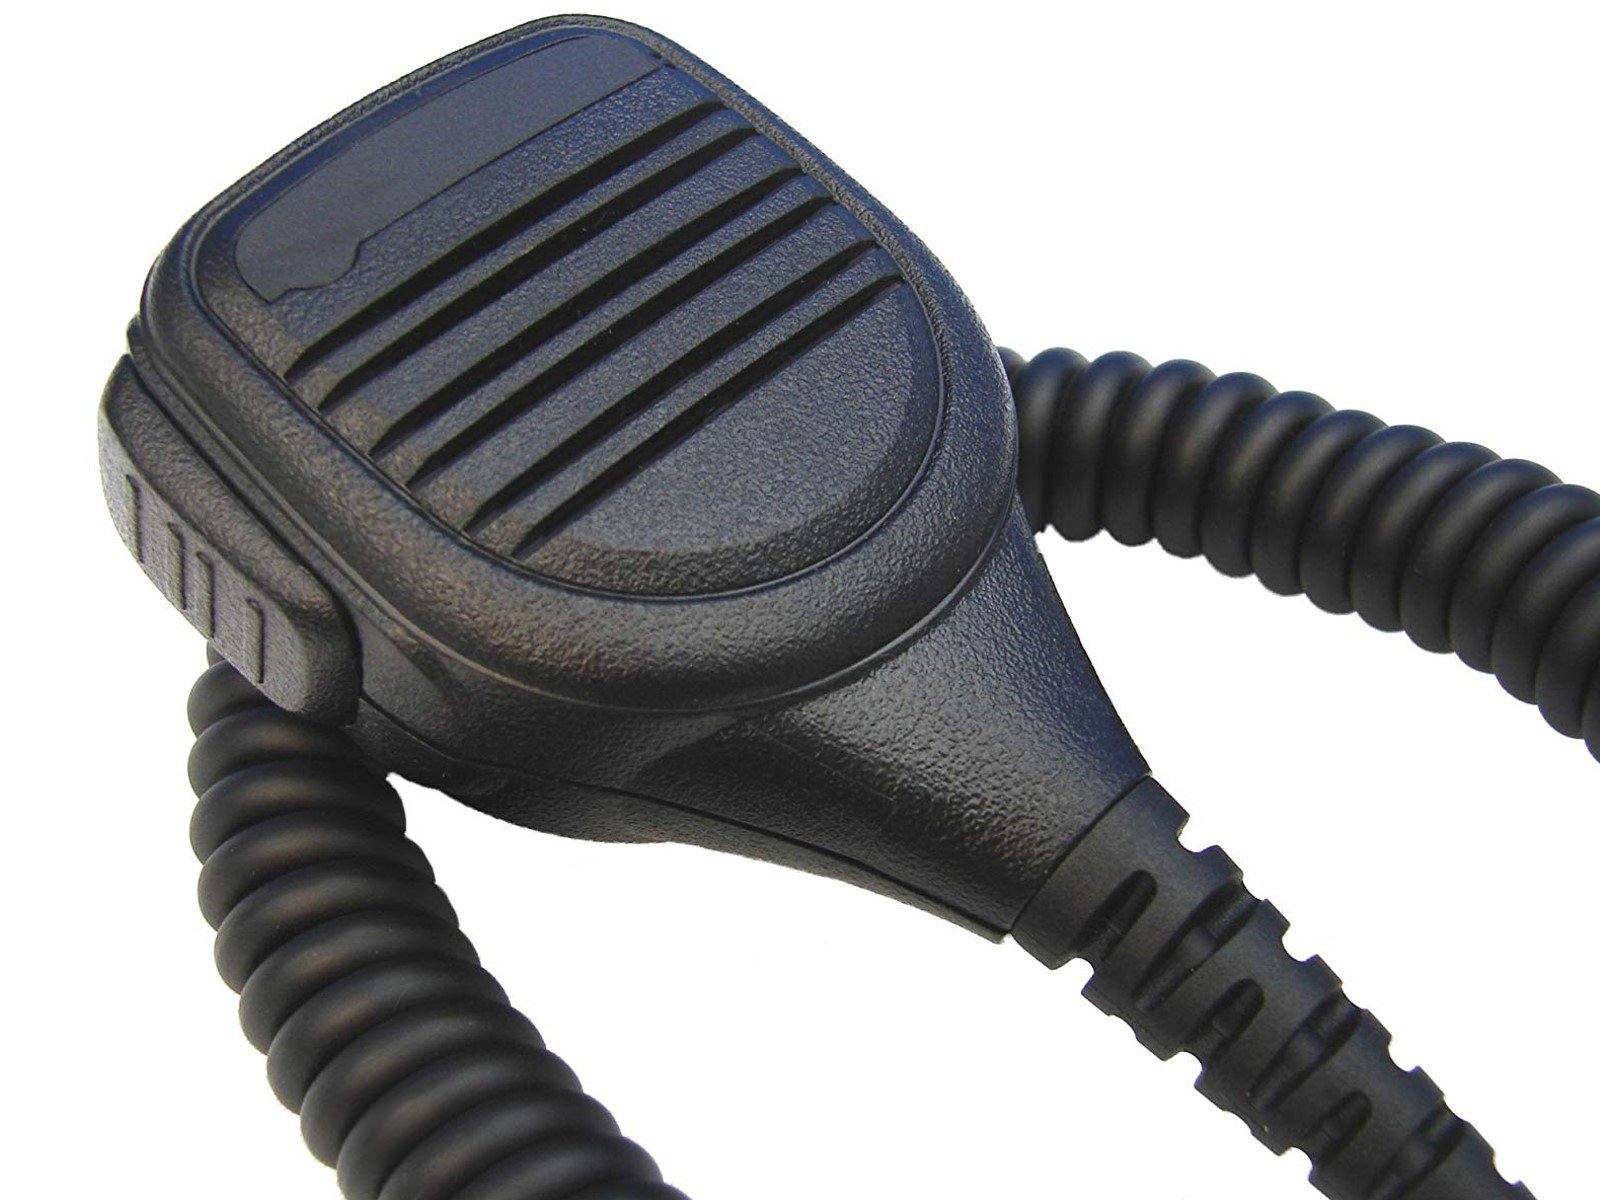 Lautsprechermikrofon robust HM250-GP360